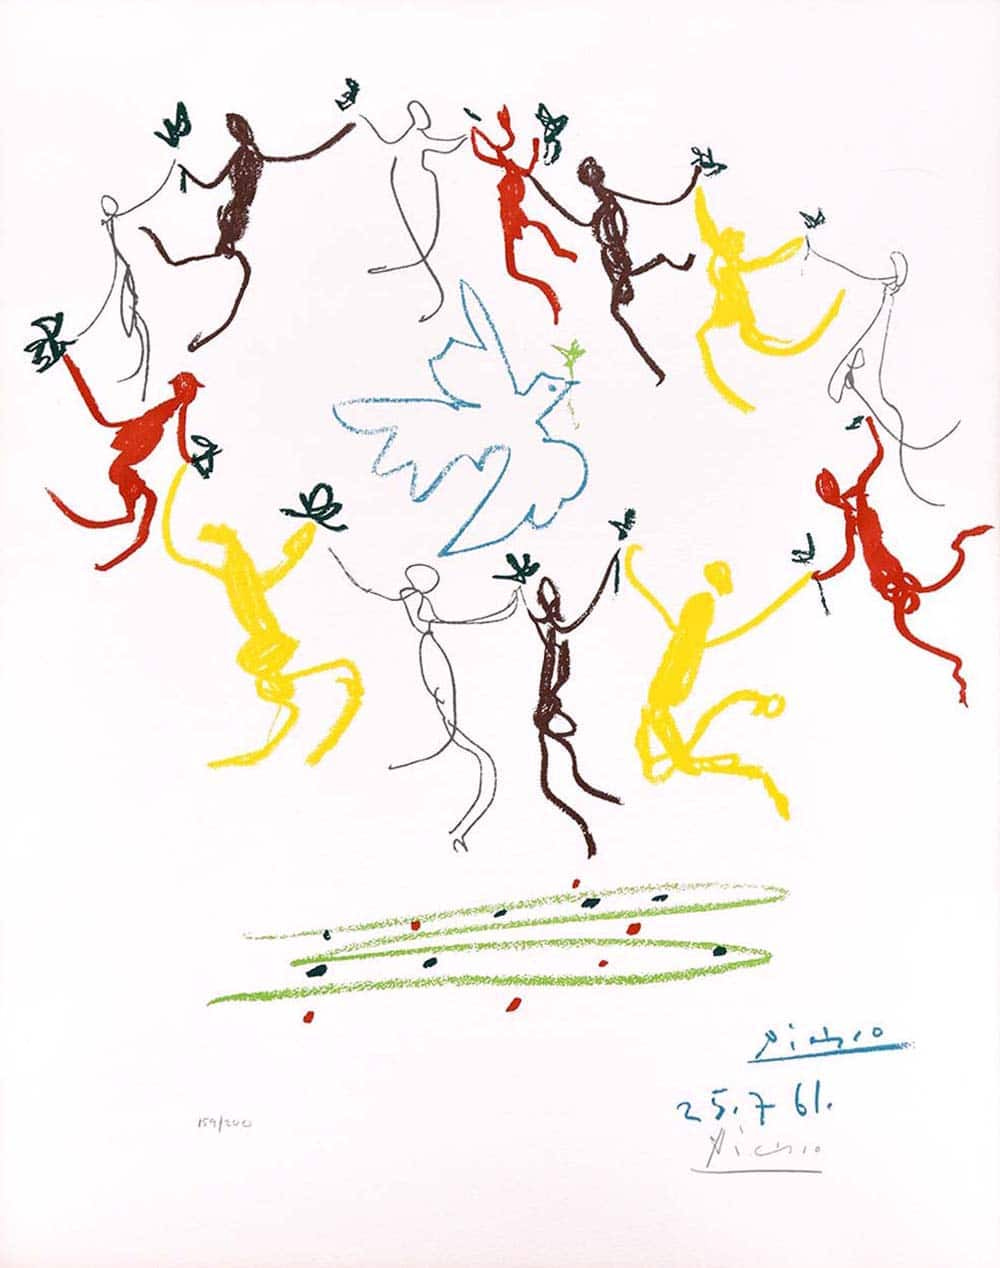 Pablo Picasso, La Ronde de la Jeunesse (The Youth Circle), 1961, Lithograph